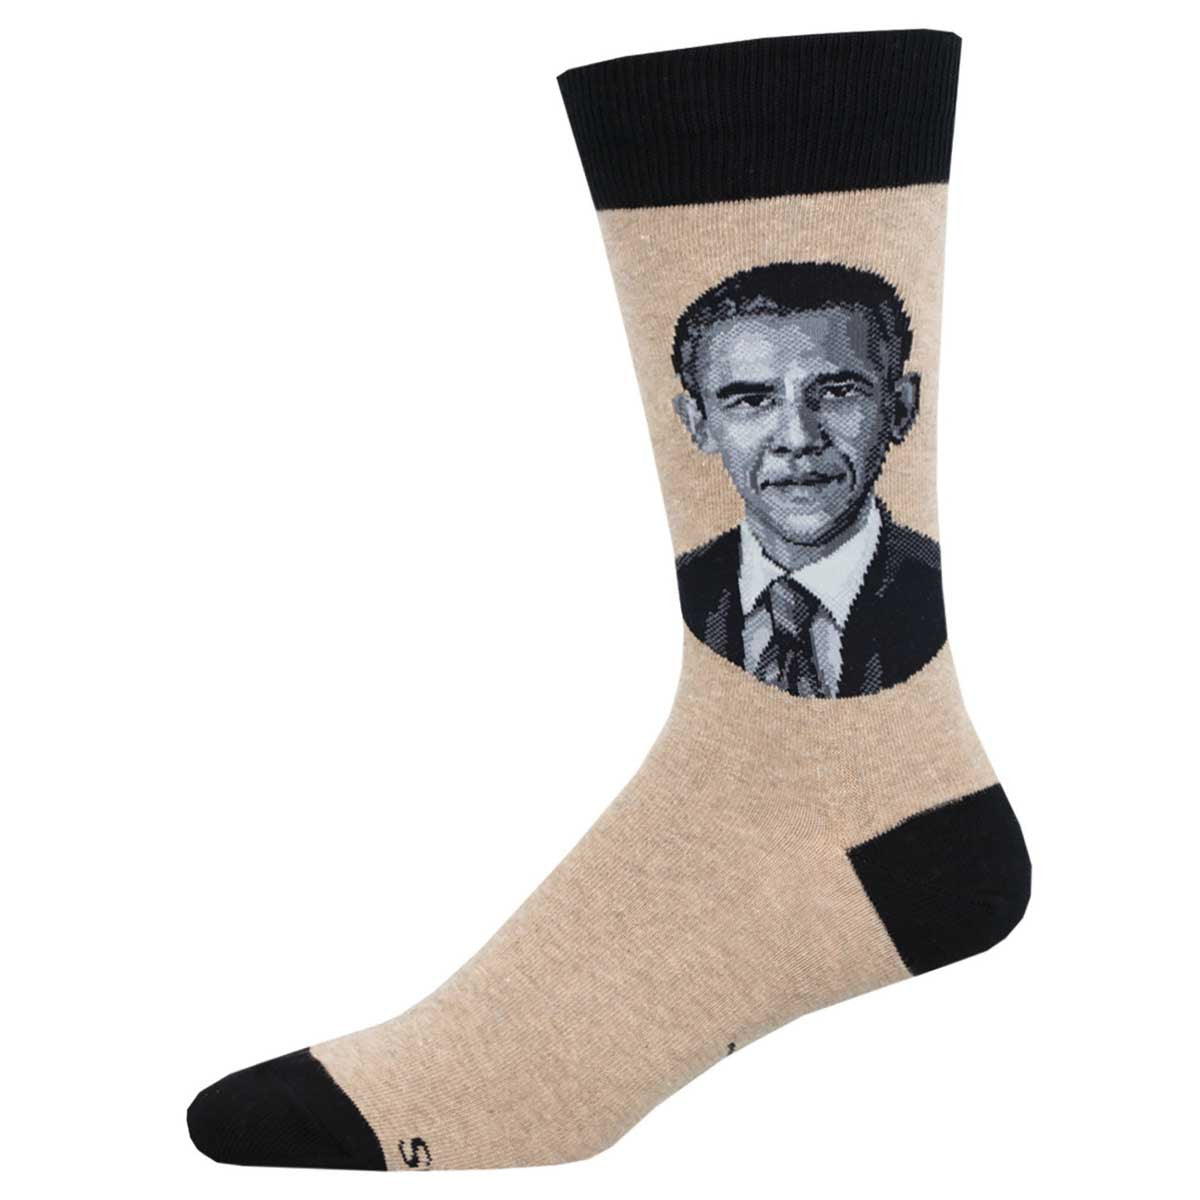 President Obama Socks